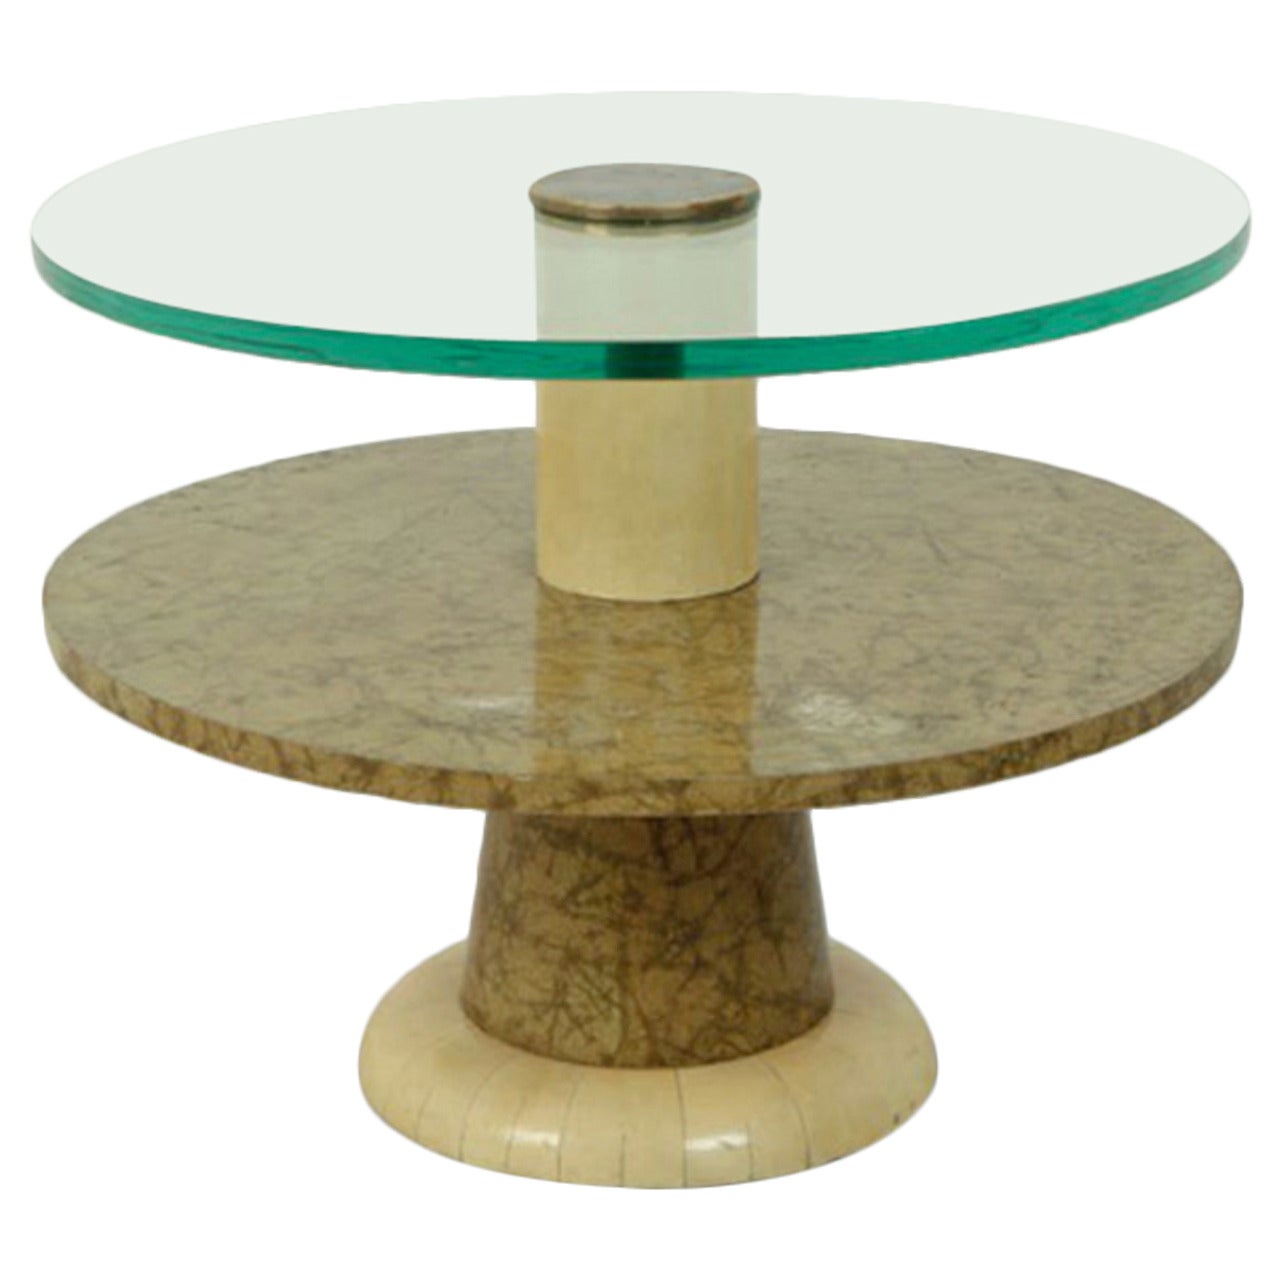 Side Table by Osvaldo Borsani, Arredamento Borsani Varedo, circa 1935